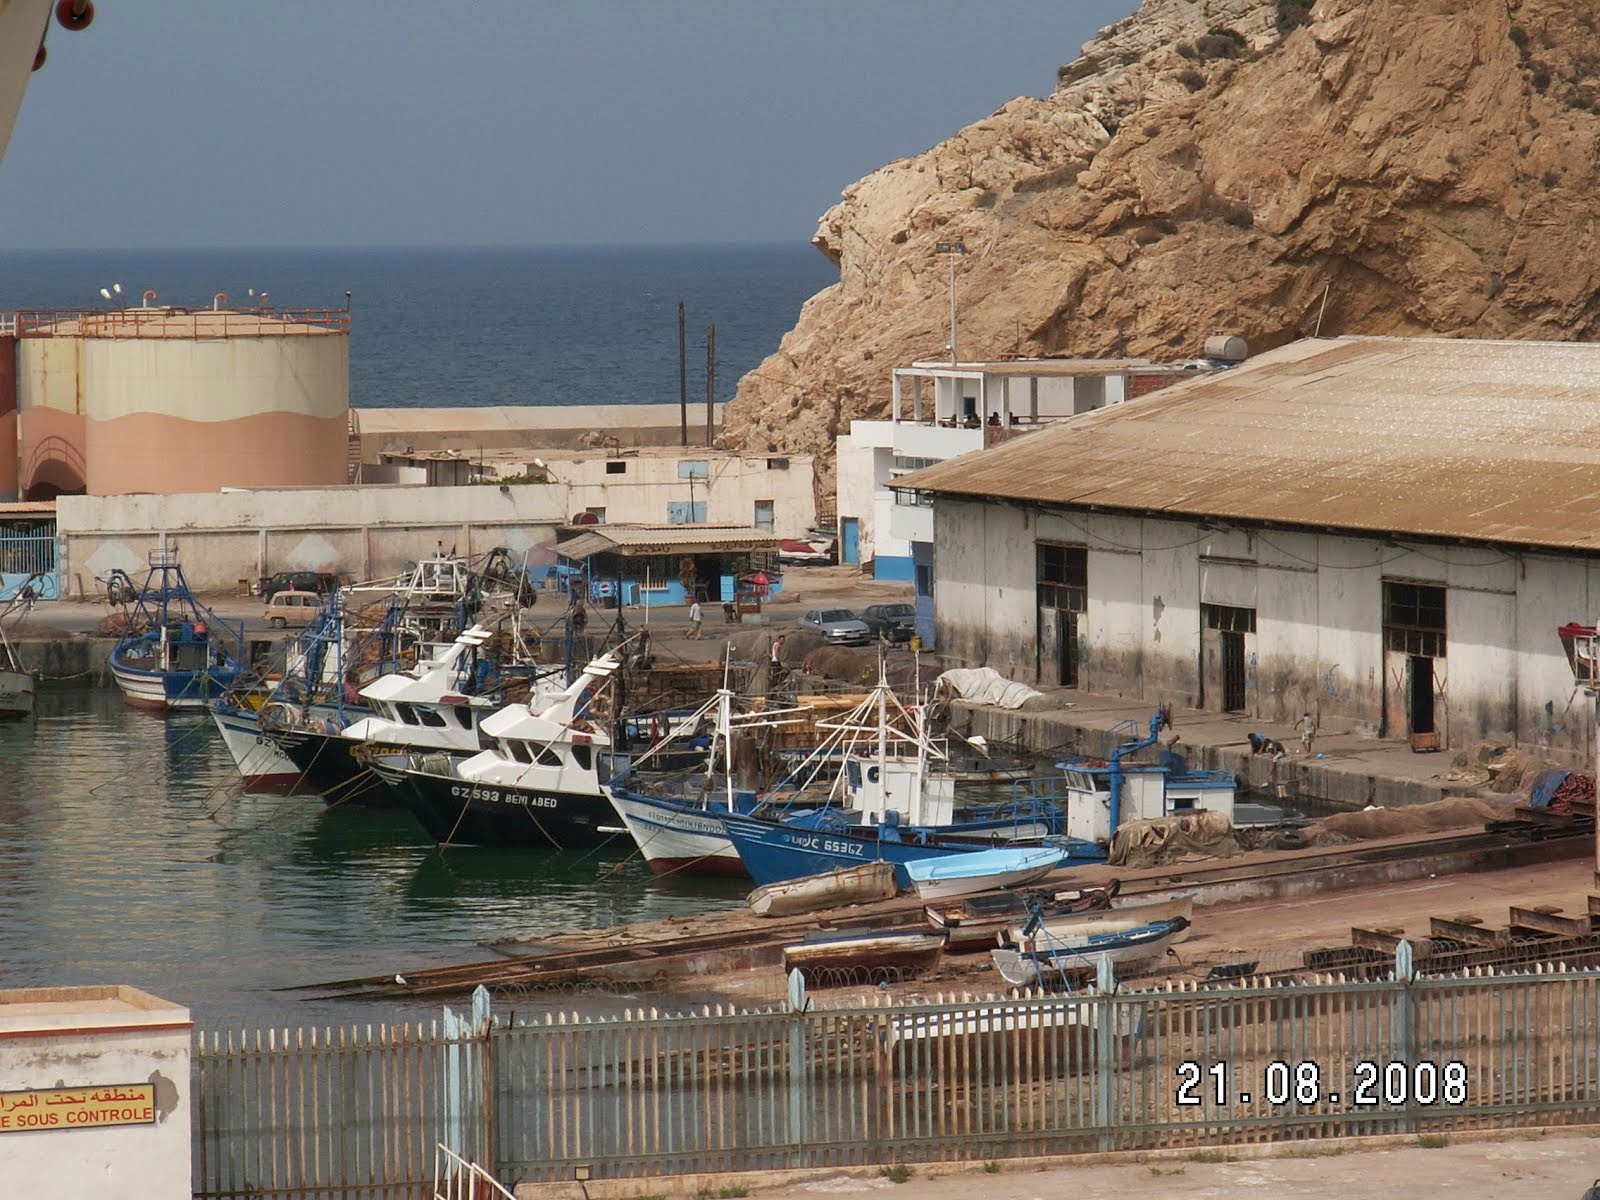 Port de Ghazaouet